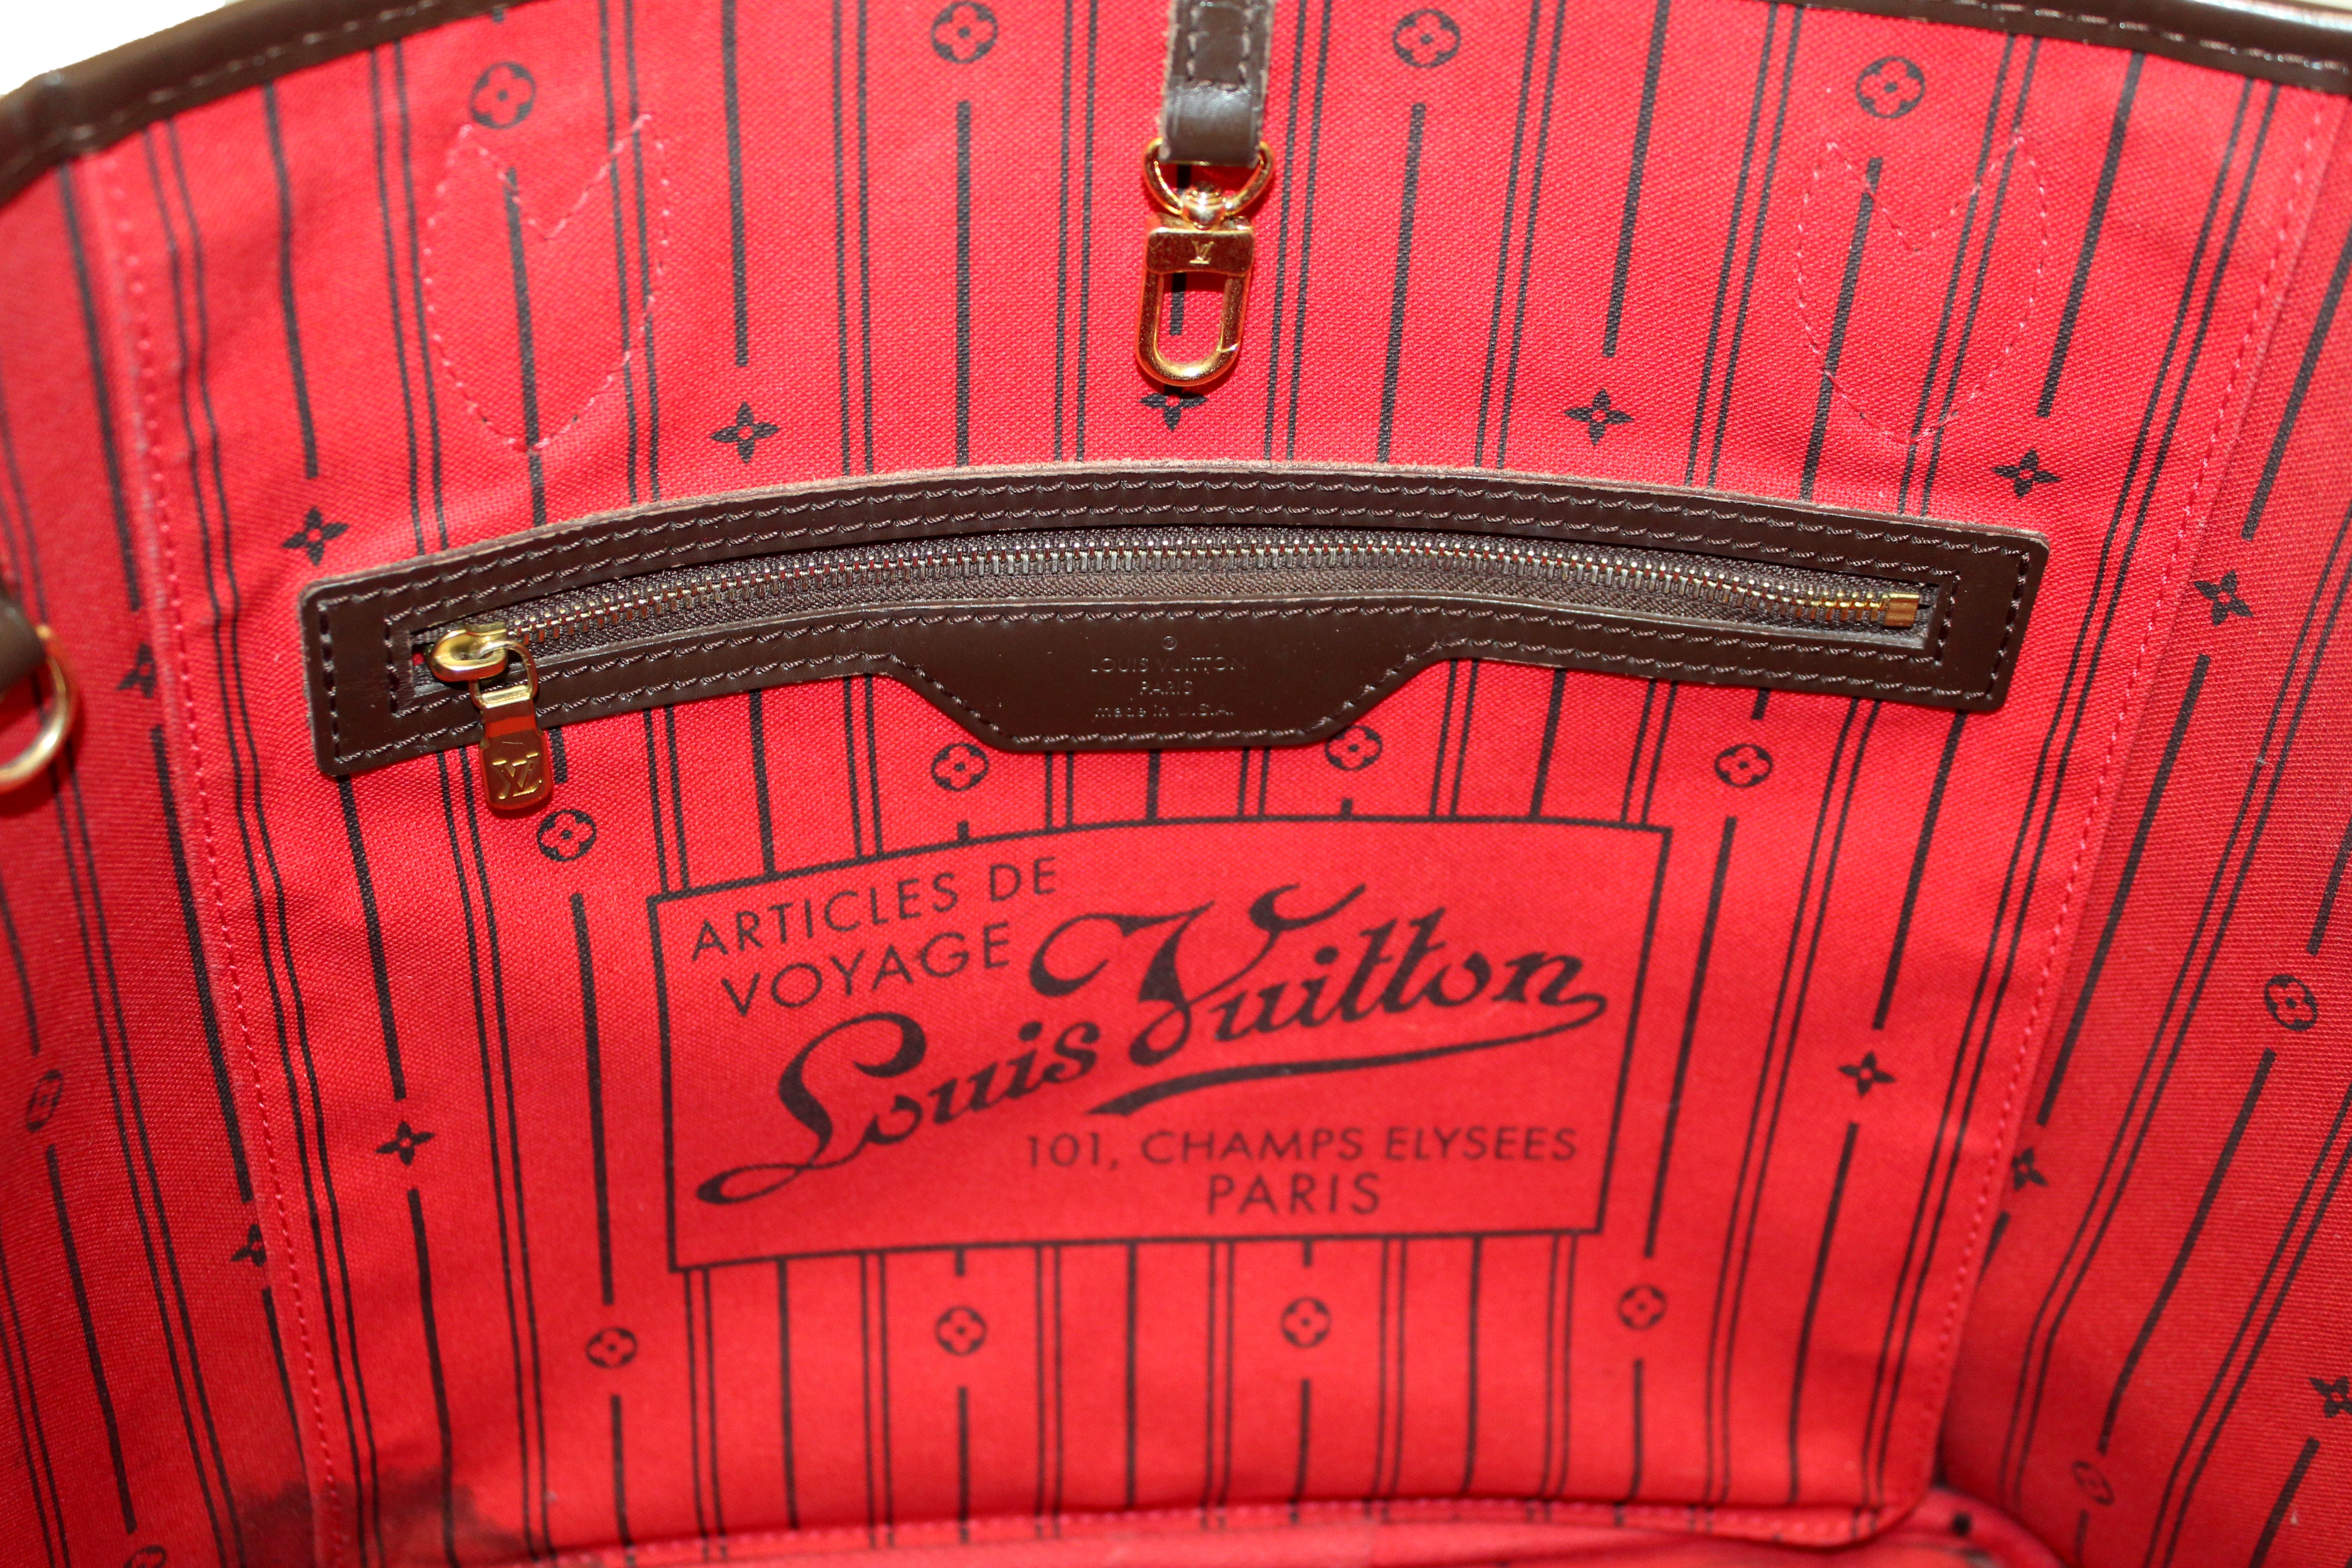 Authentic Louis Vuitton Damier Ebene Neverfull mm Shoulder Bag